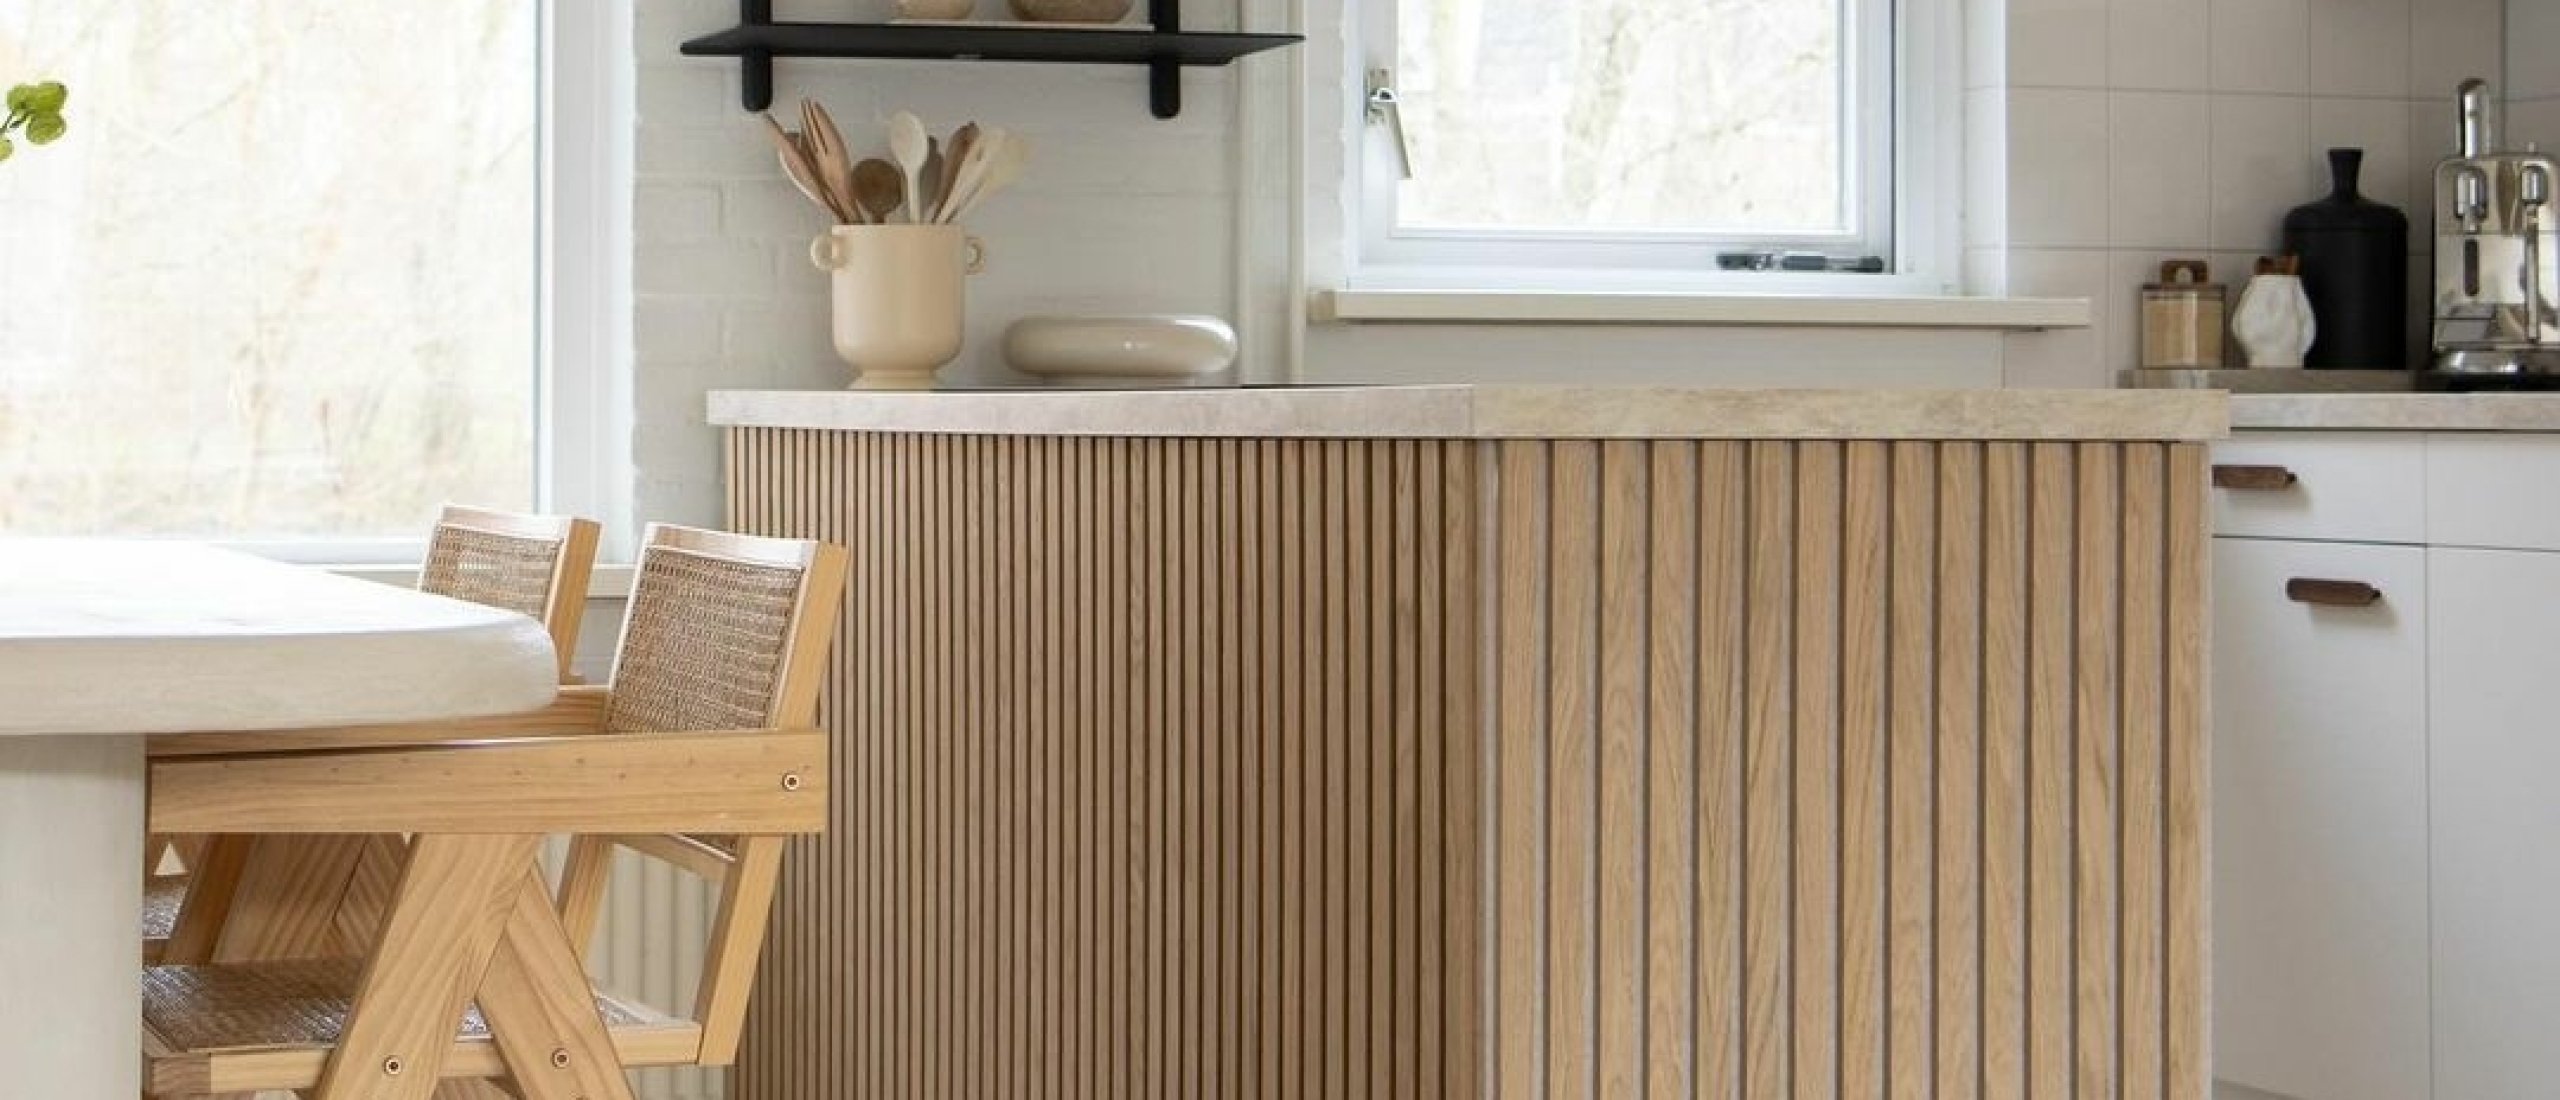 Maak zelf een Ikea keukeneiland! 2 x fantastische DIY's